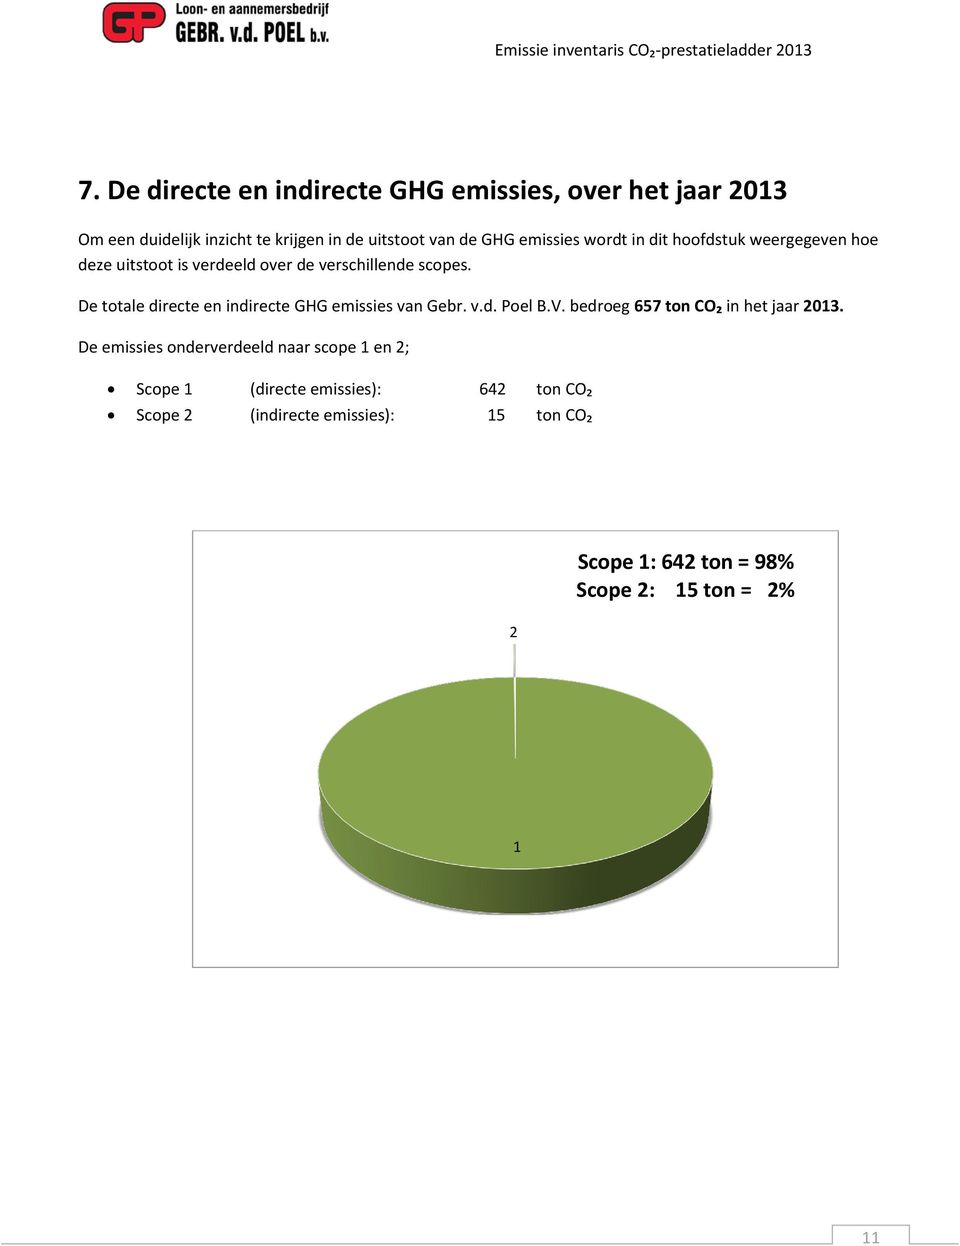 De totale directe en indirecte GHG emissies van Gebr. v.d. Poel B.V. bedroeg 657 ton CO₂ in het jaar 2013.